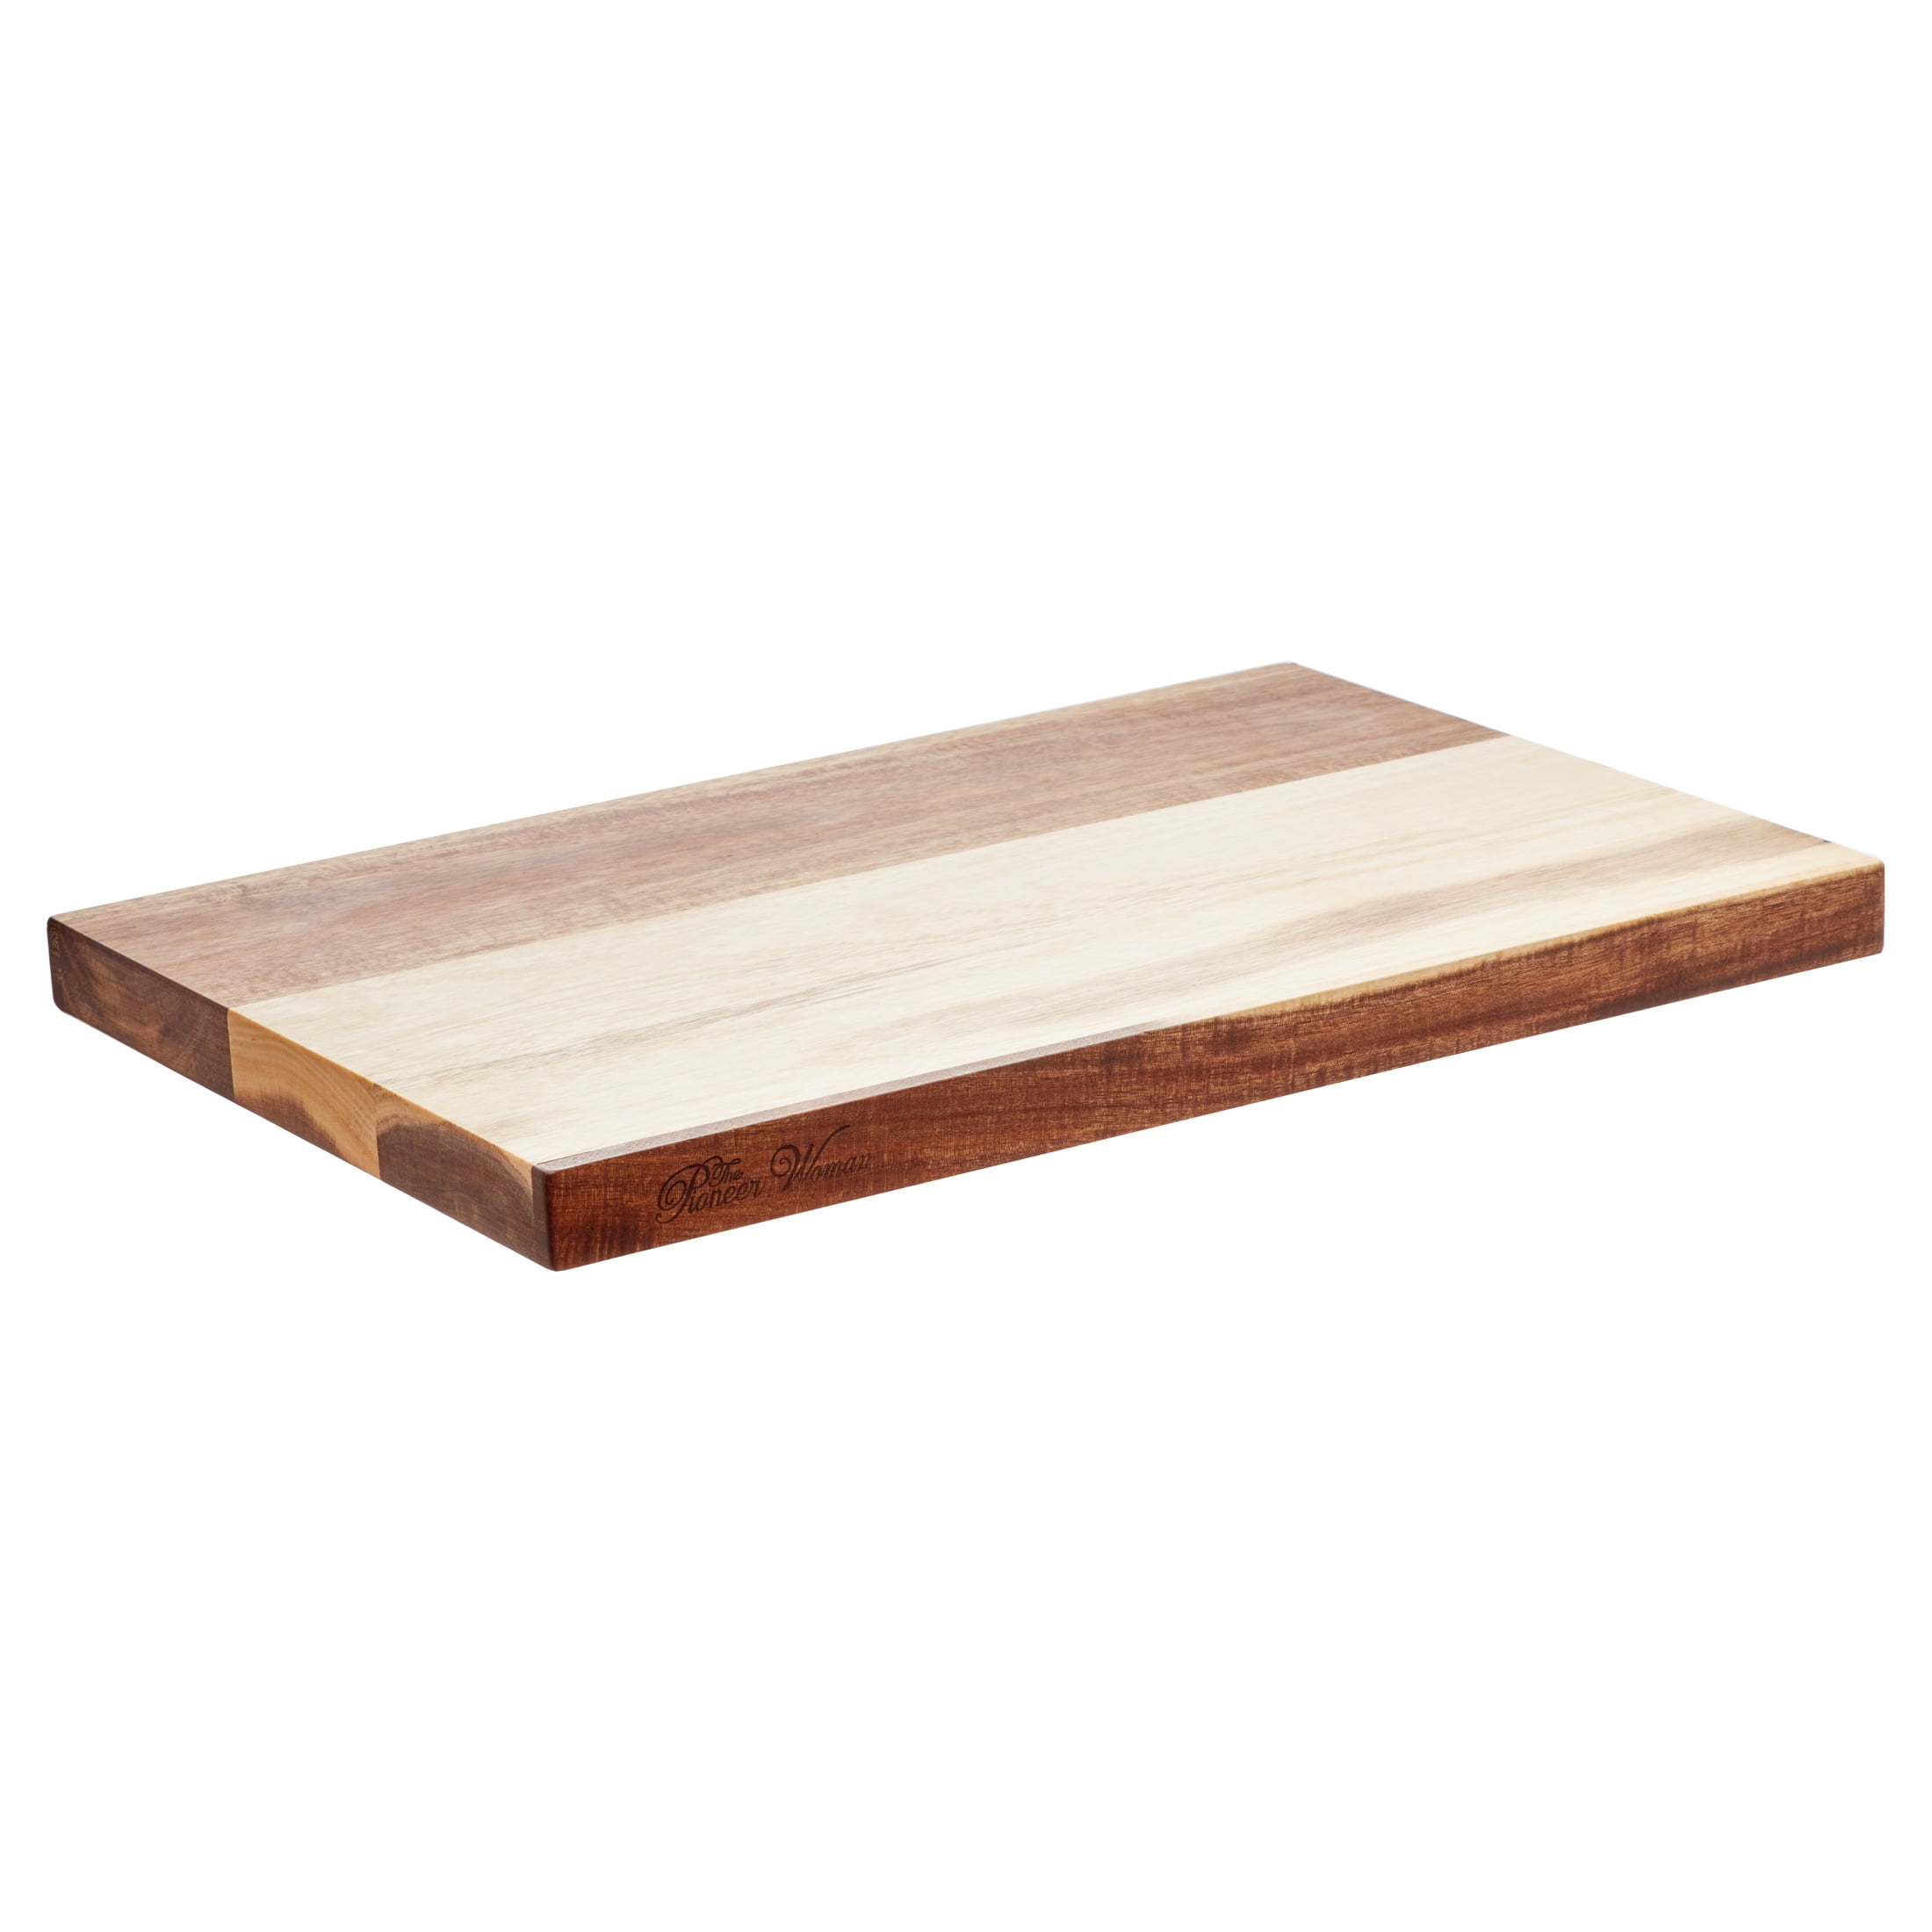 Rustic metal cutting craft die Wood Board planks Dies...to die for